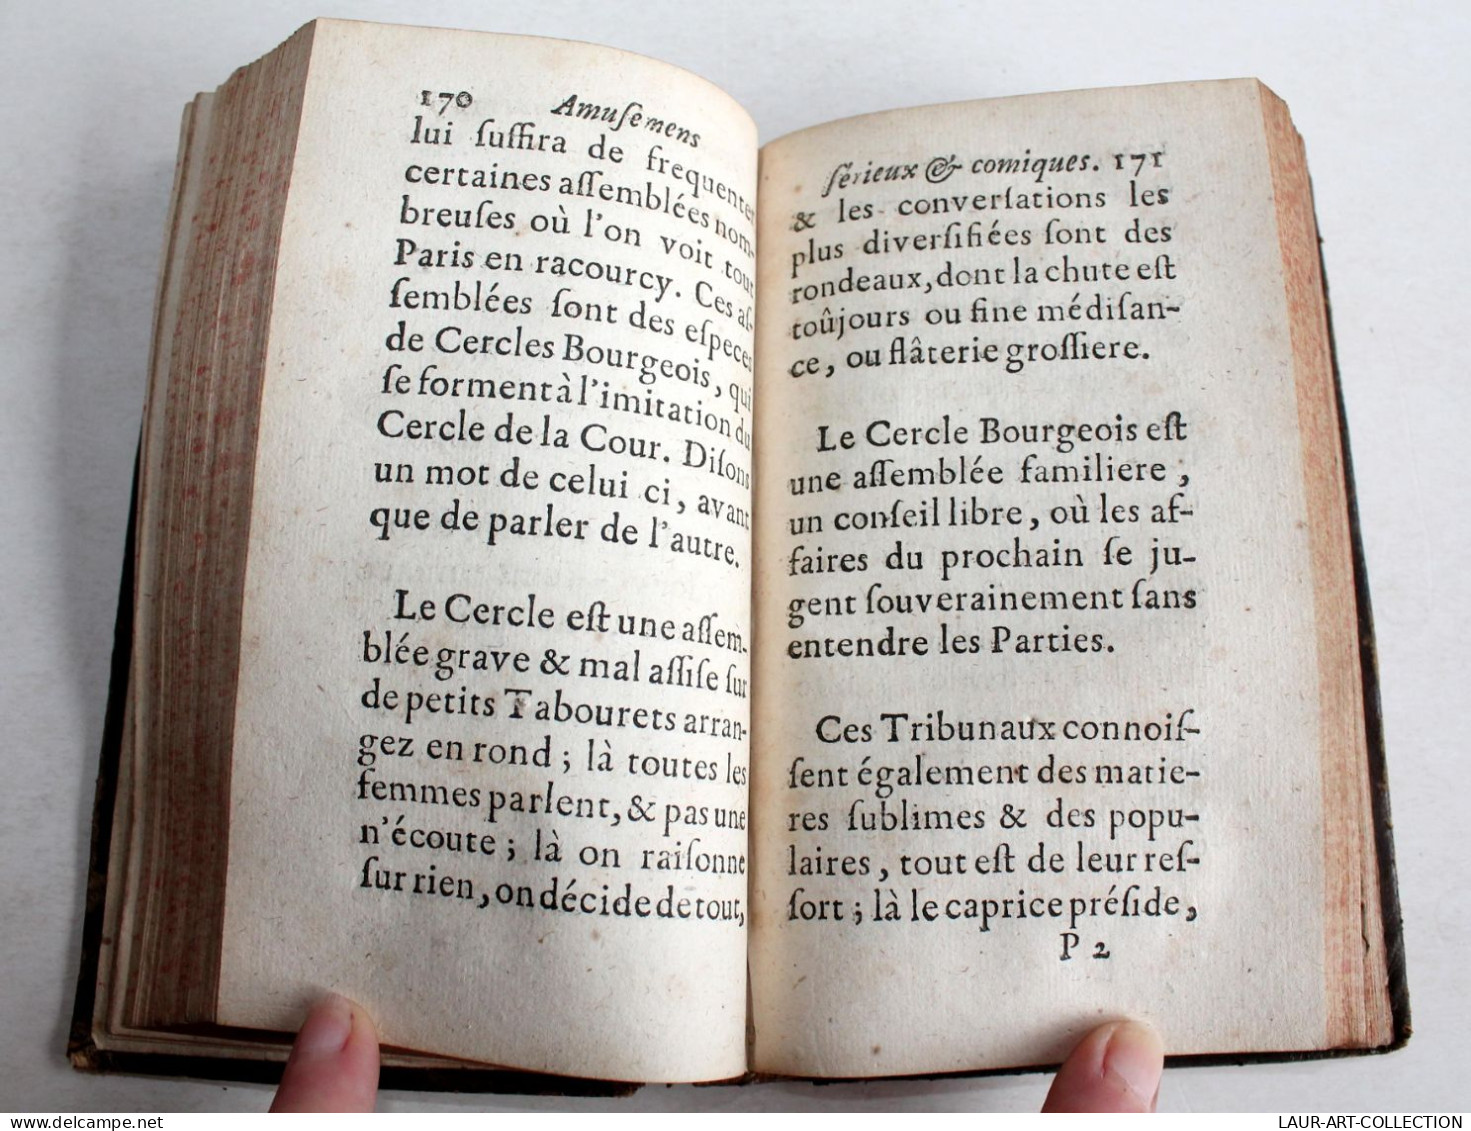 AMUSEMENS SERIEUX ET COMIQUES Par CH. RIVIERE DUFRESNY 1723 JEAN JOMBERT EDITION ORIGINALE, LIVRE XVIIIe SIECLE (2204.3) - 1701-1800